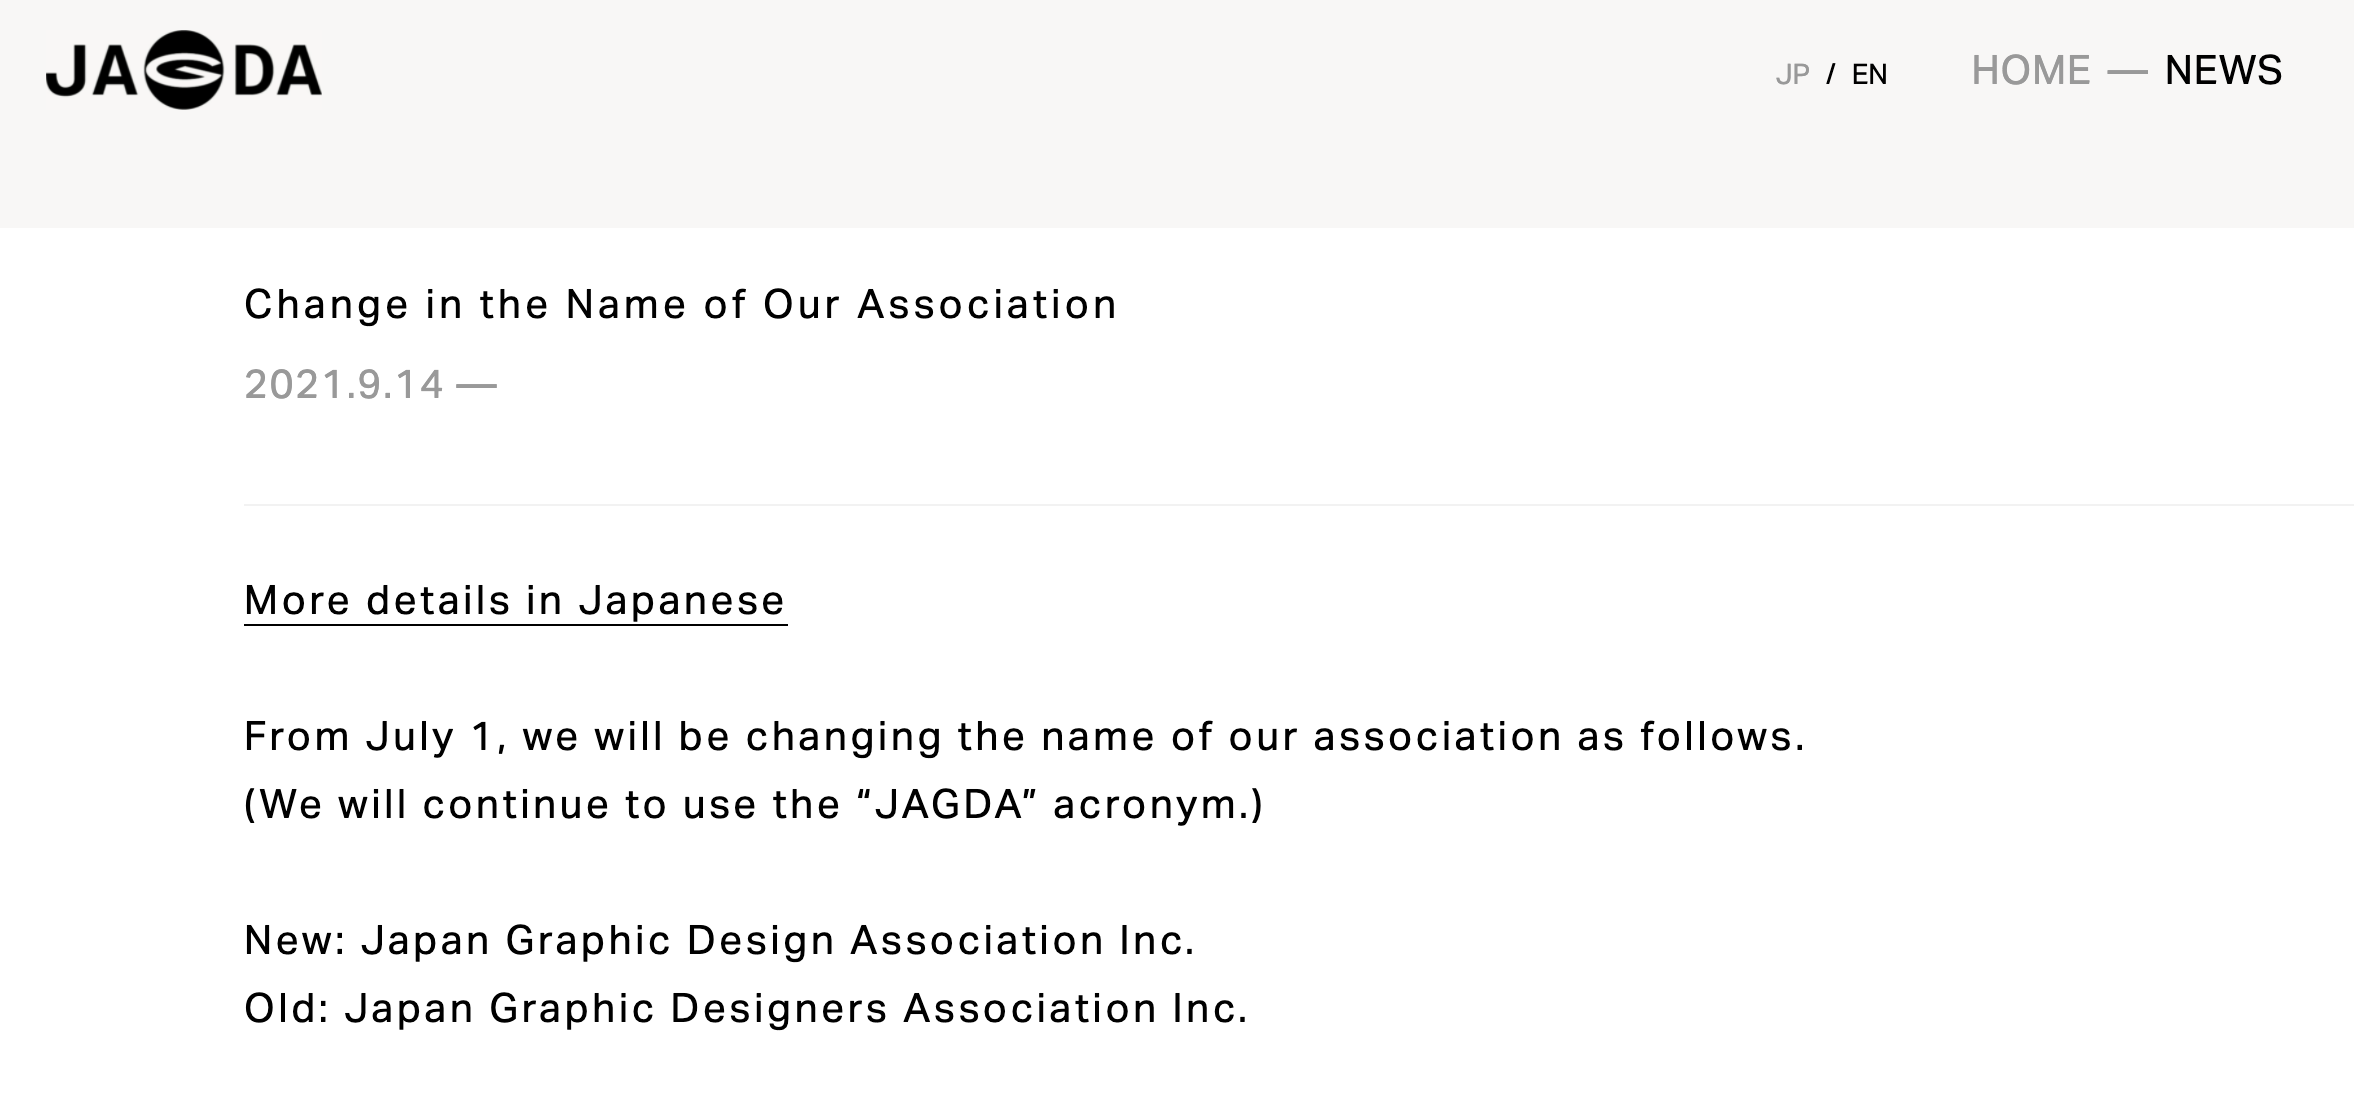 JAGDA name change calls in expanded disciplines